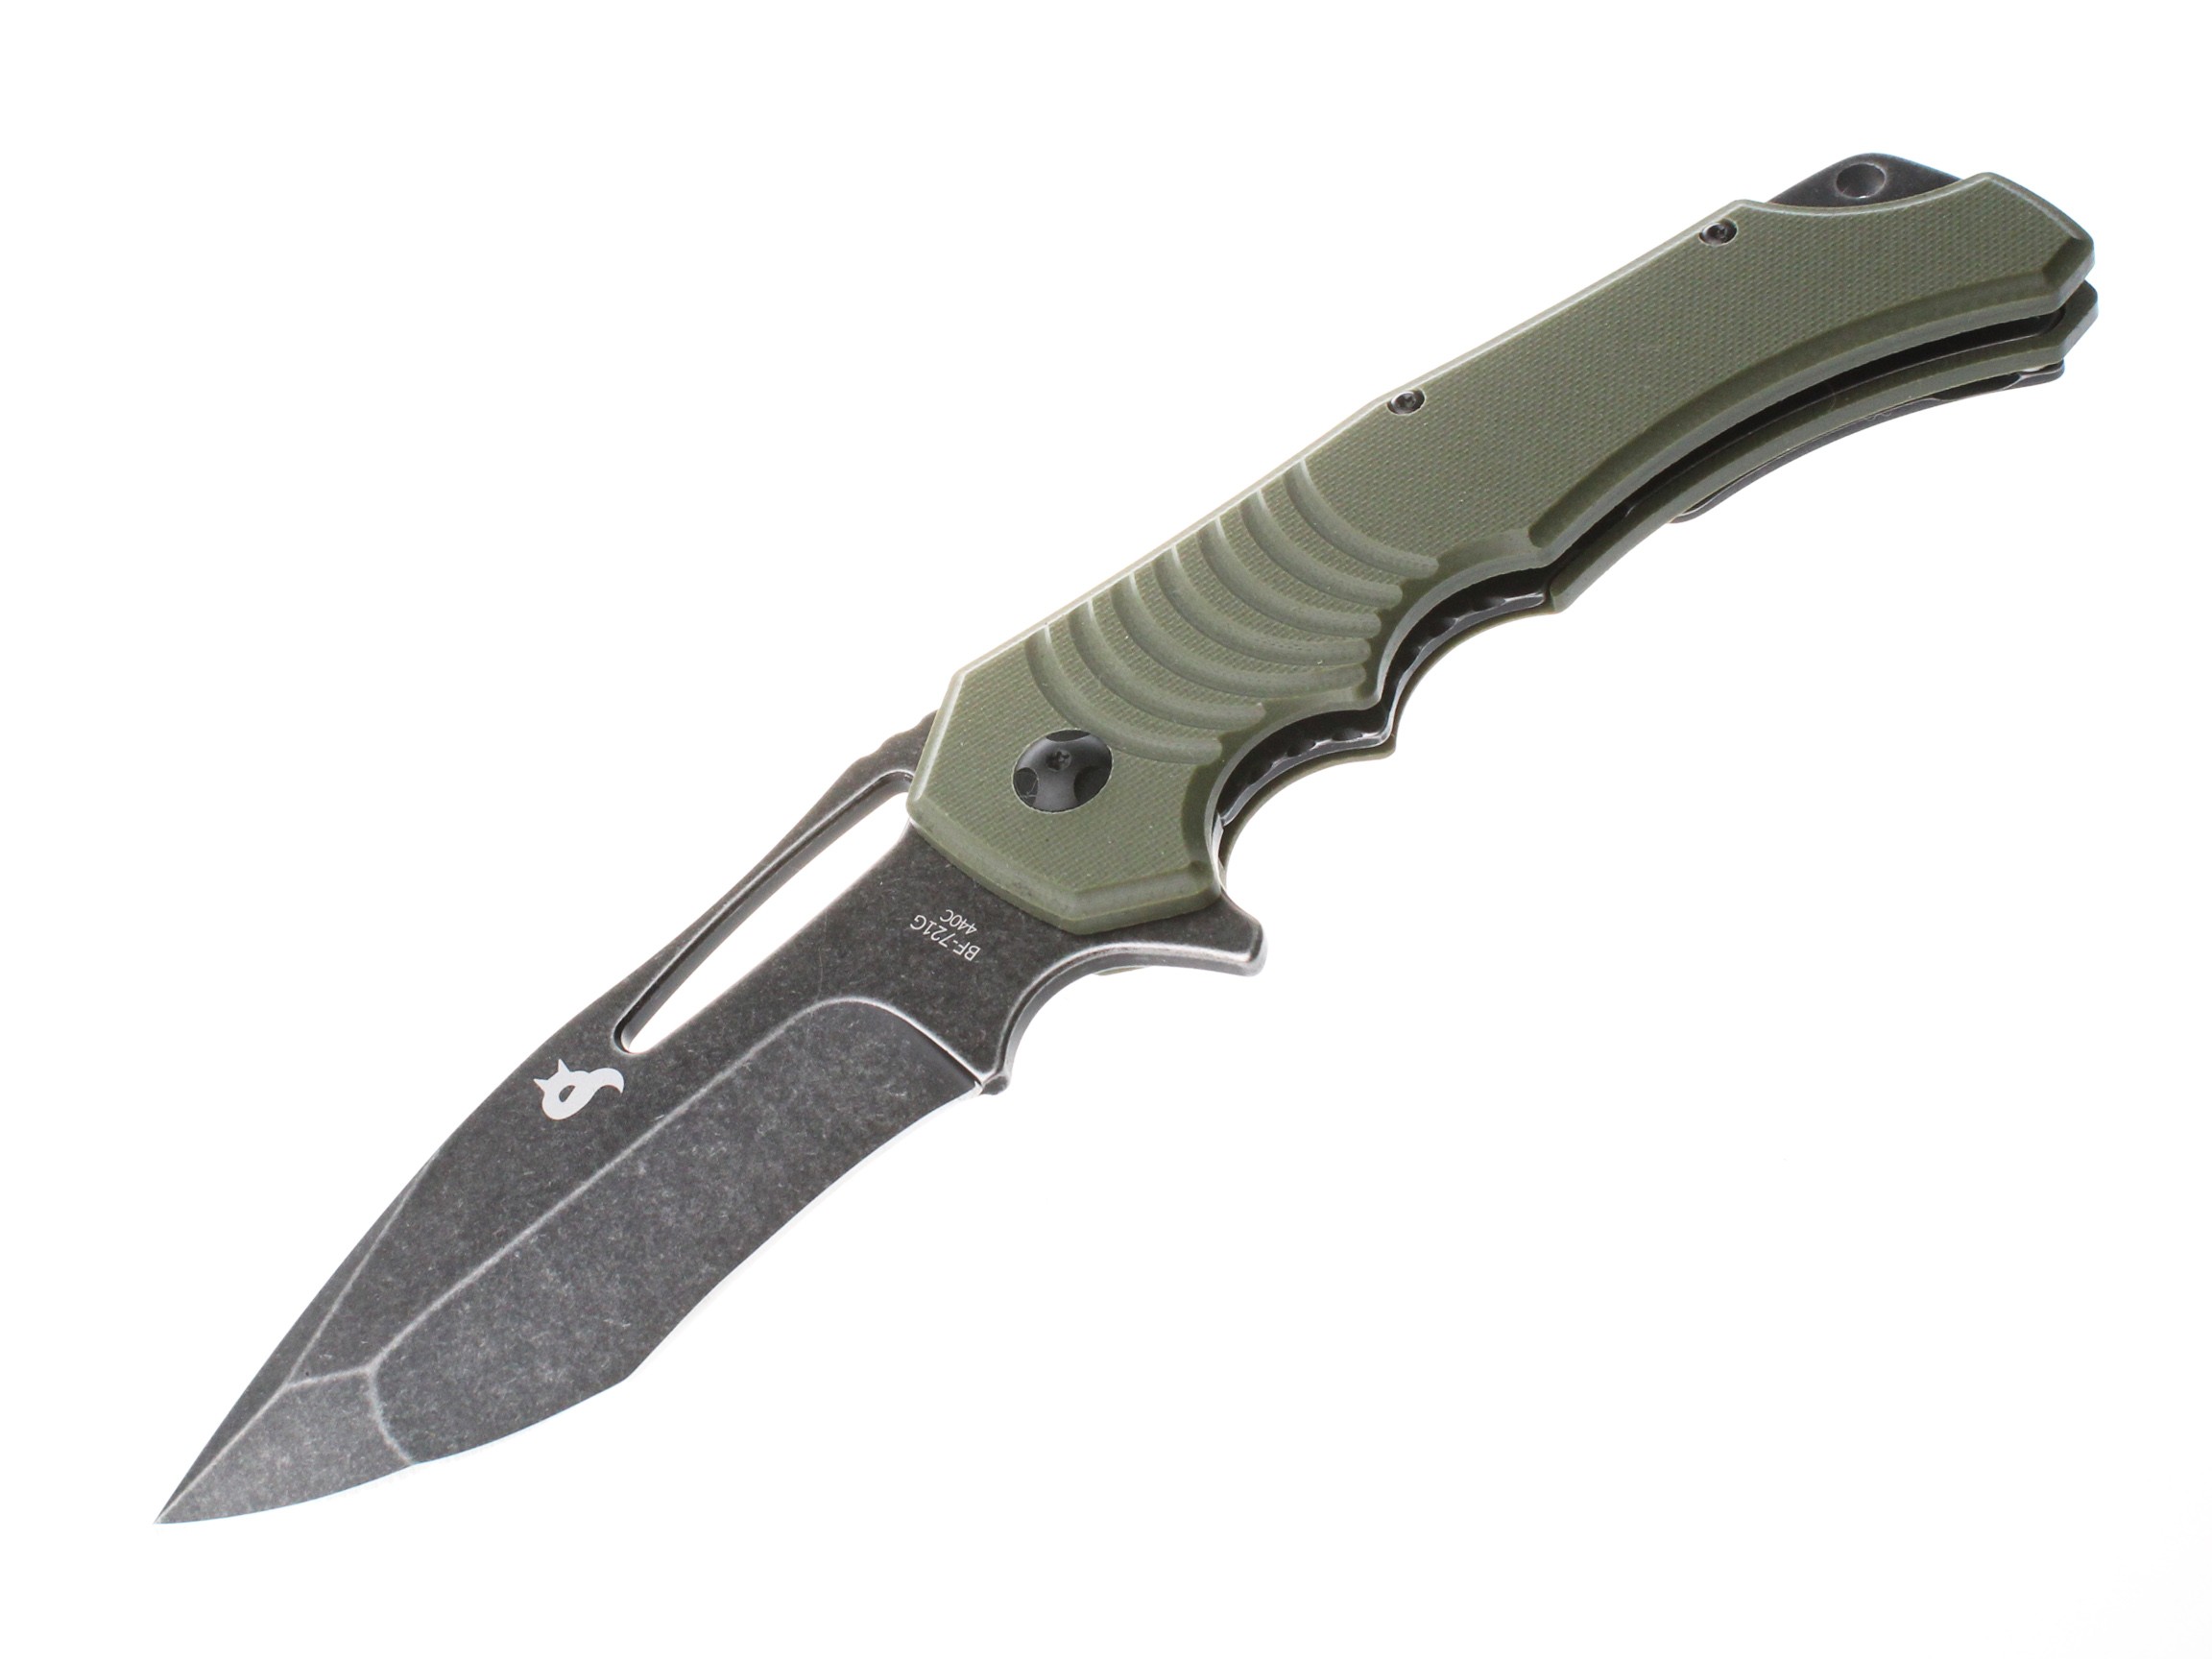 Нож Fox Knives Hugin складной сталь 440С рукоять G10 зеленый - фото 1